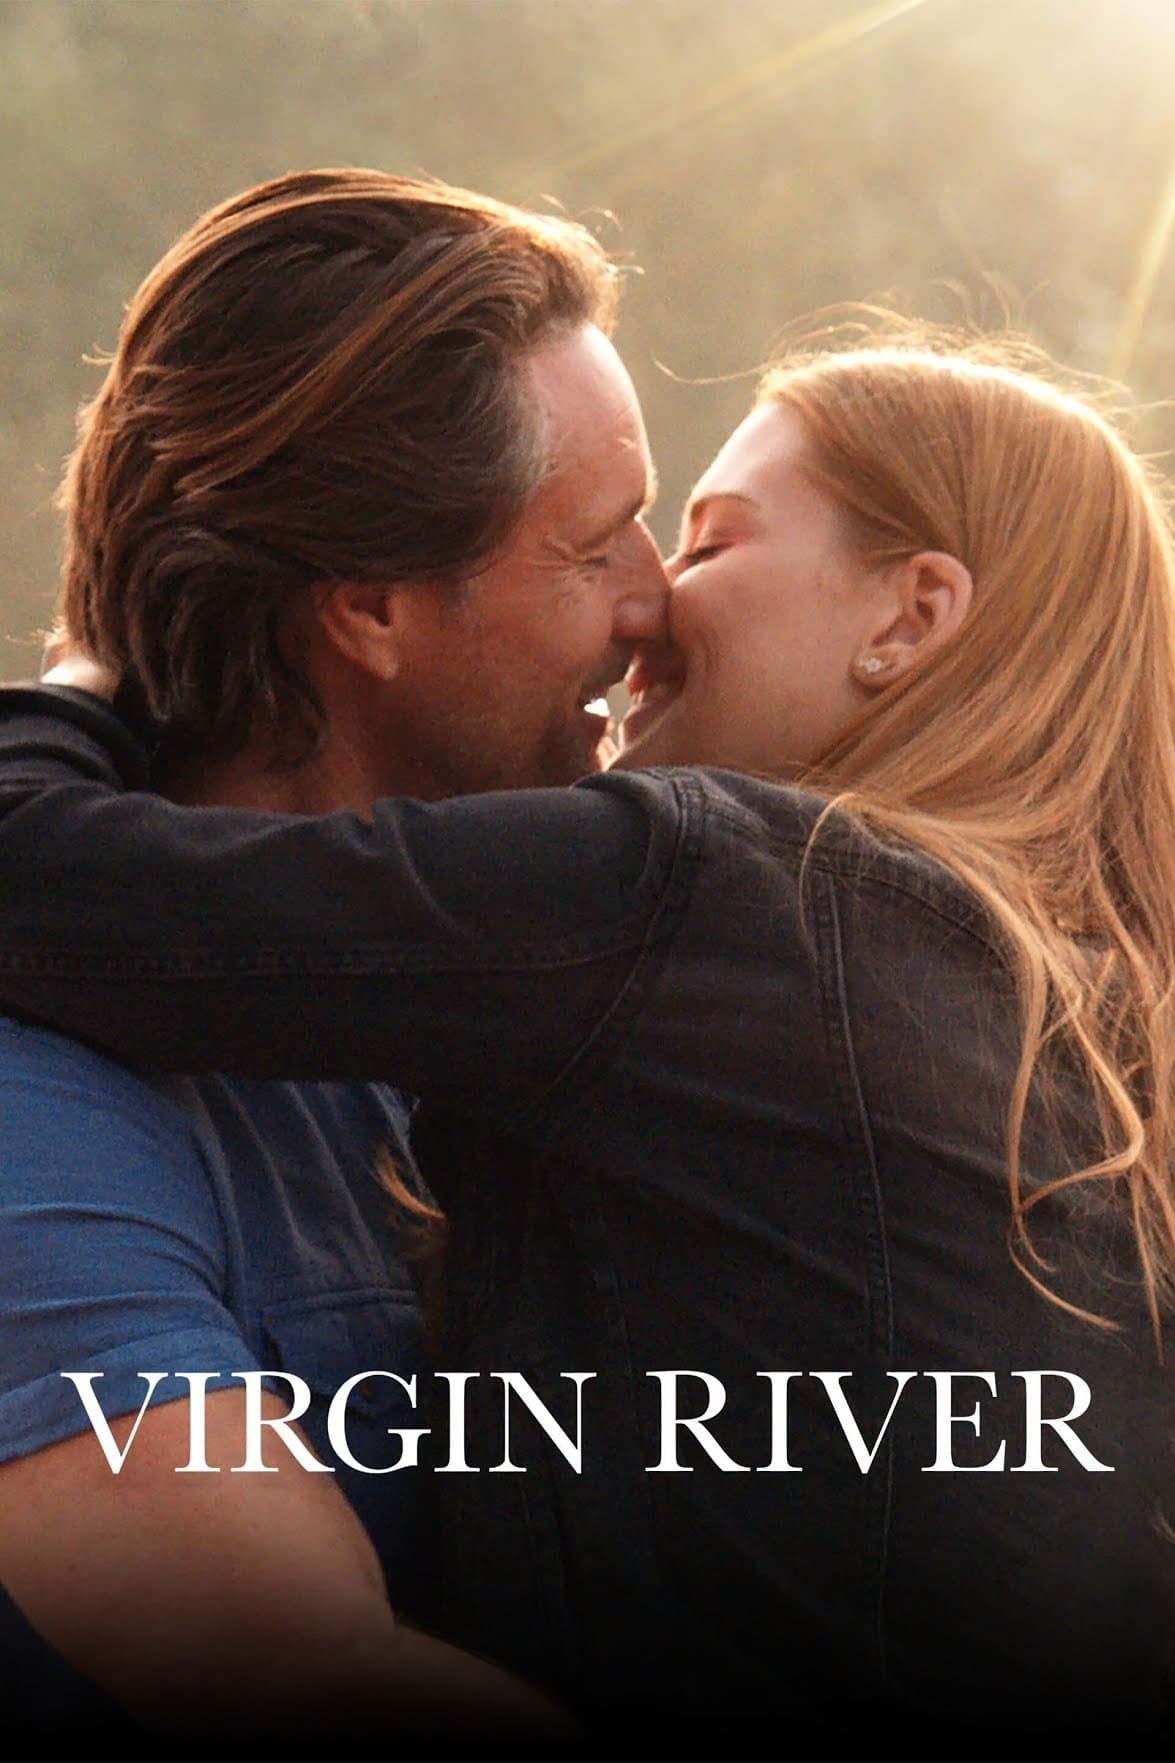 Dòng Sông Trinh Nữ (Phần 3) - Virgin River (Season 3) (2021)